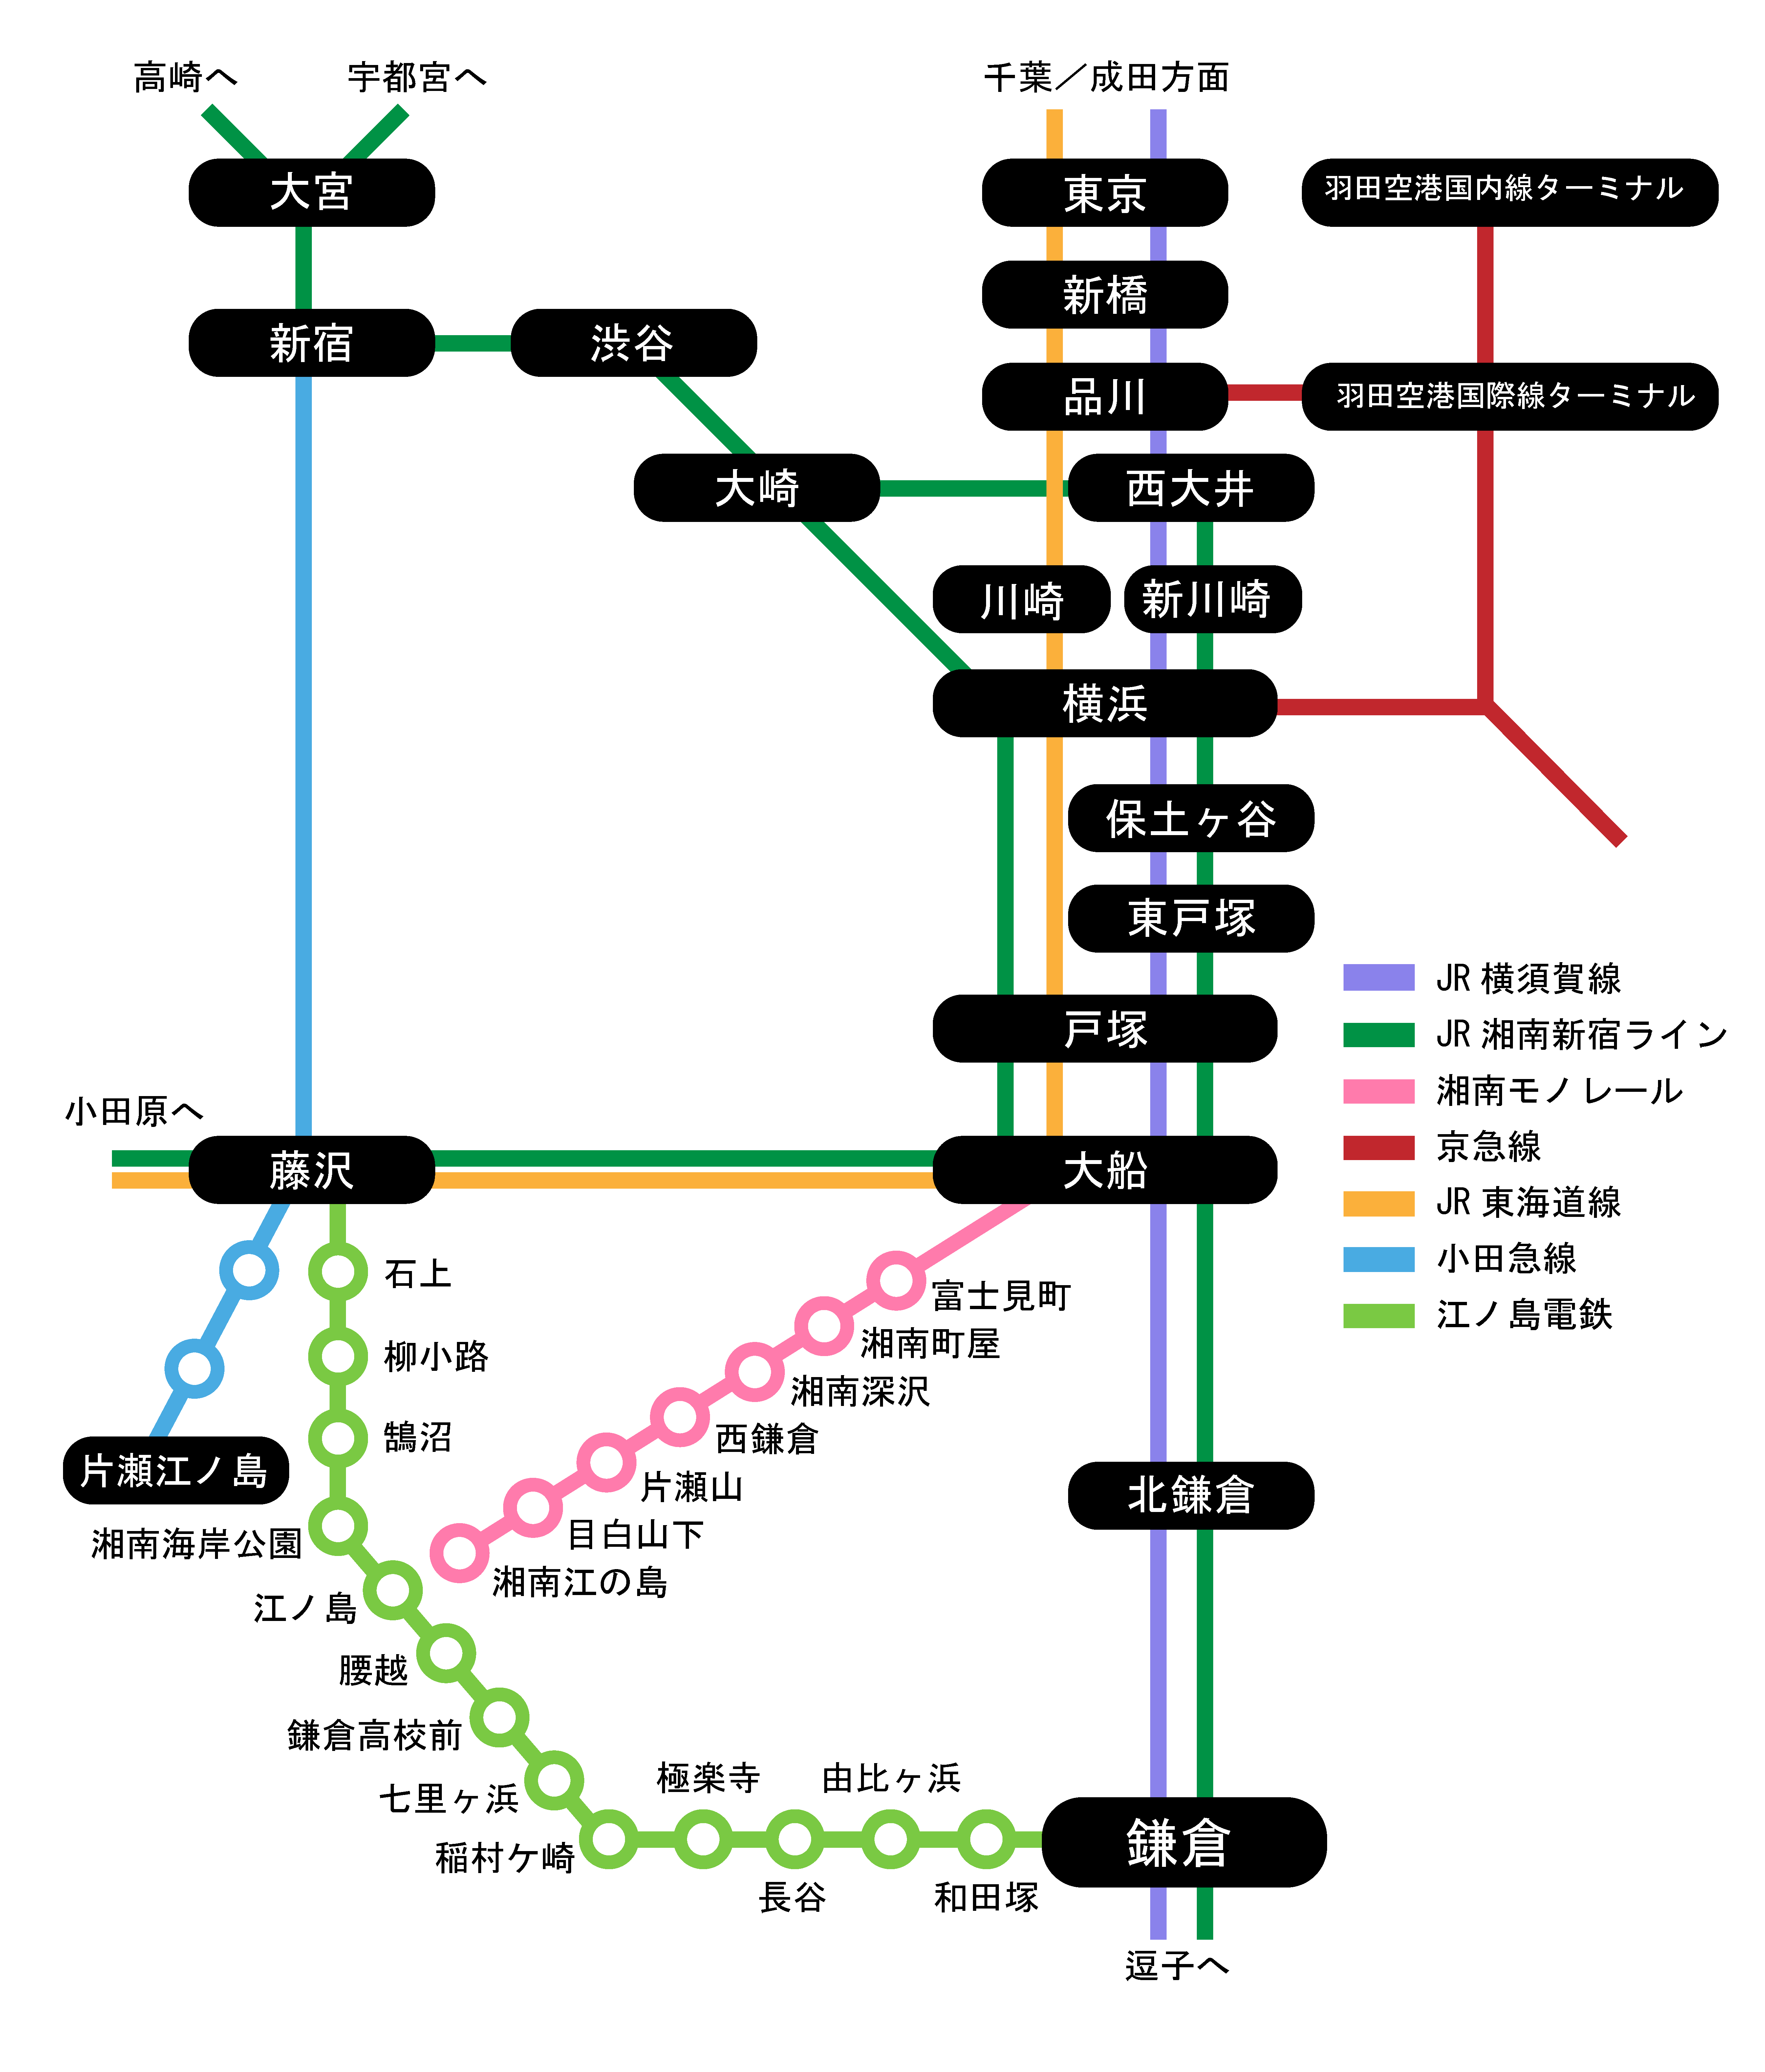 鎌倉の路線図